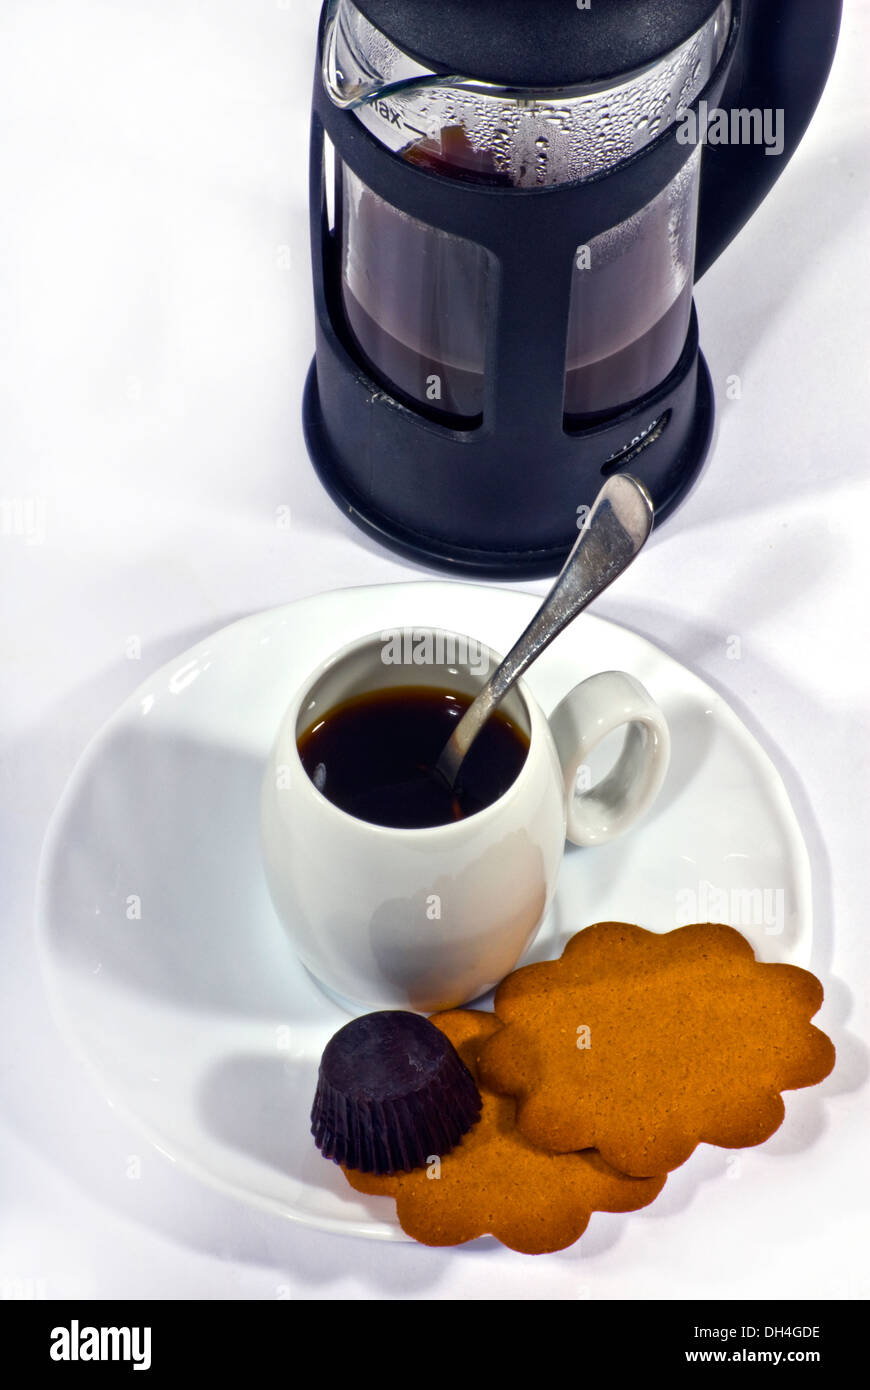 La prensa francesa tradicional café, cafetera y una pequeña taza